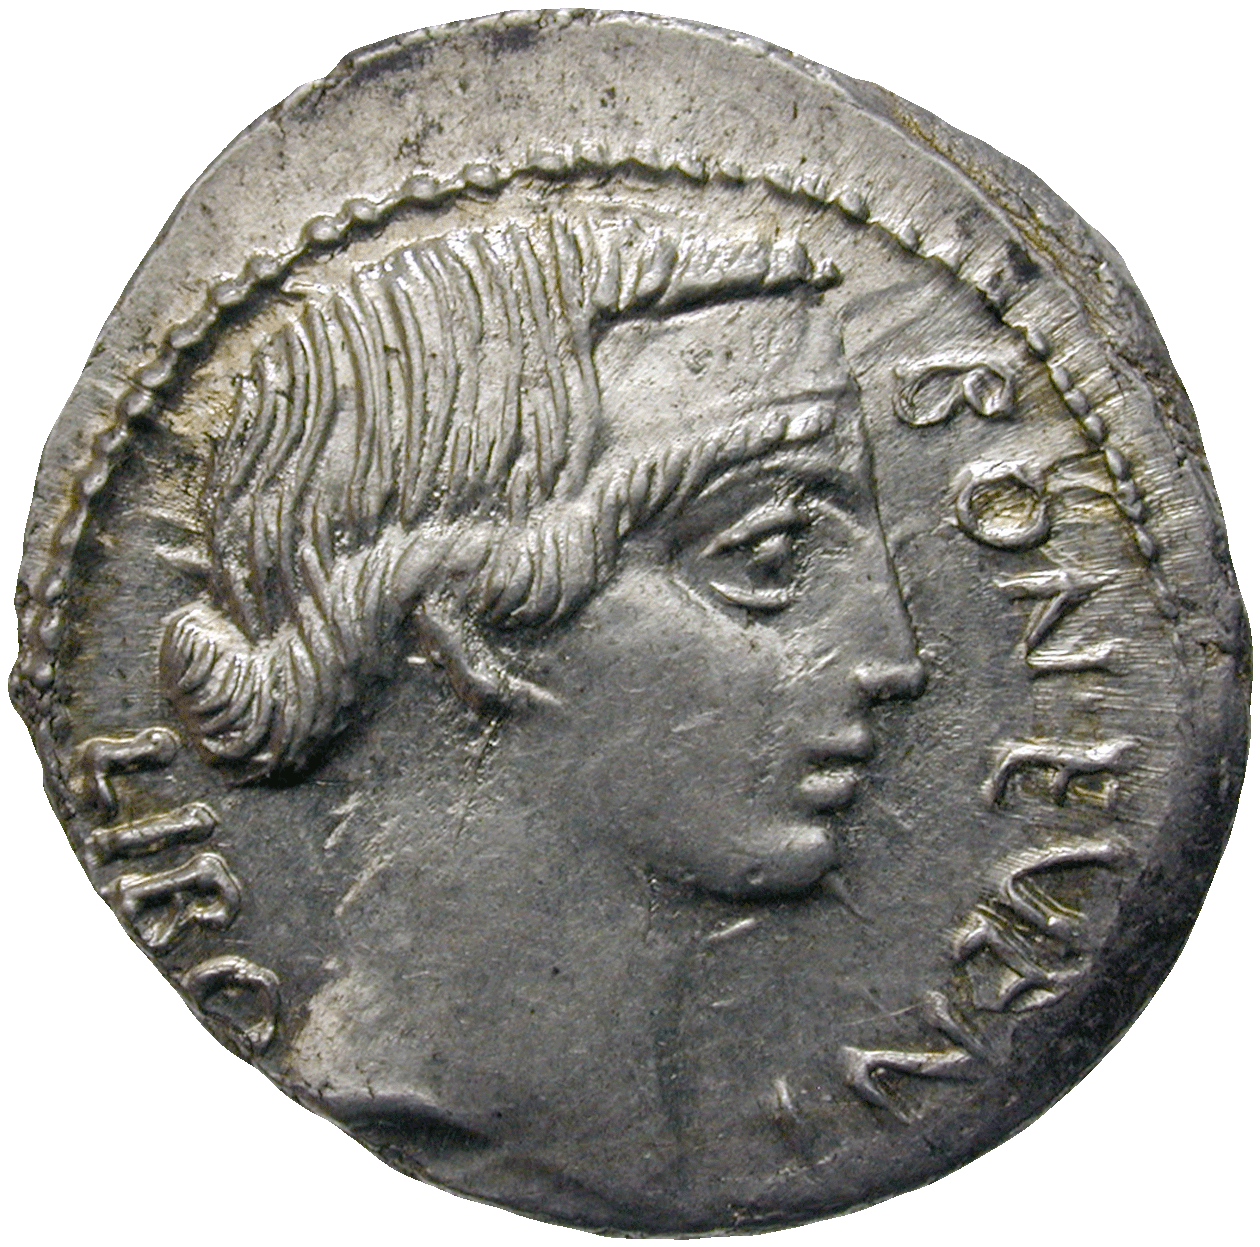 Roman Republic, Denarius (obverse)